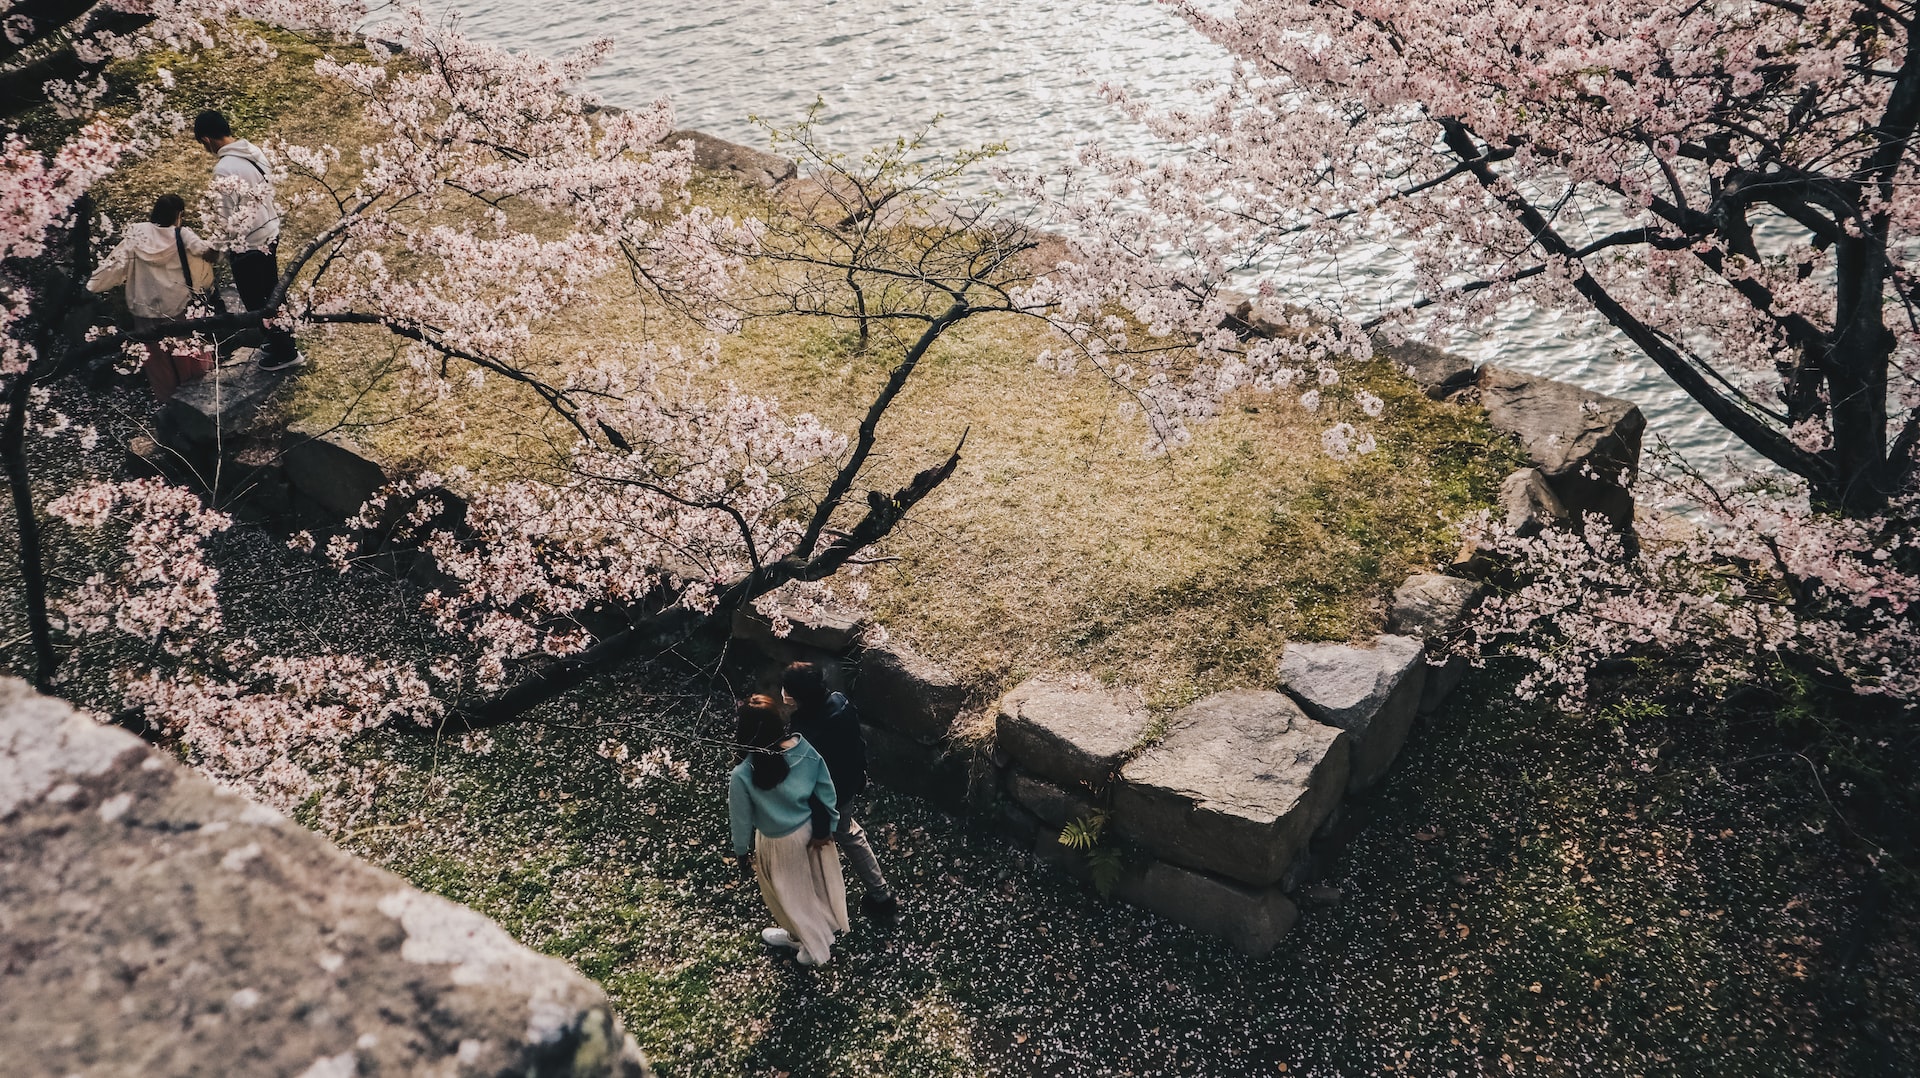 Hiroshima. Couples walking under Sakura trees.